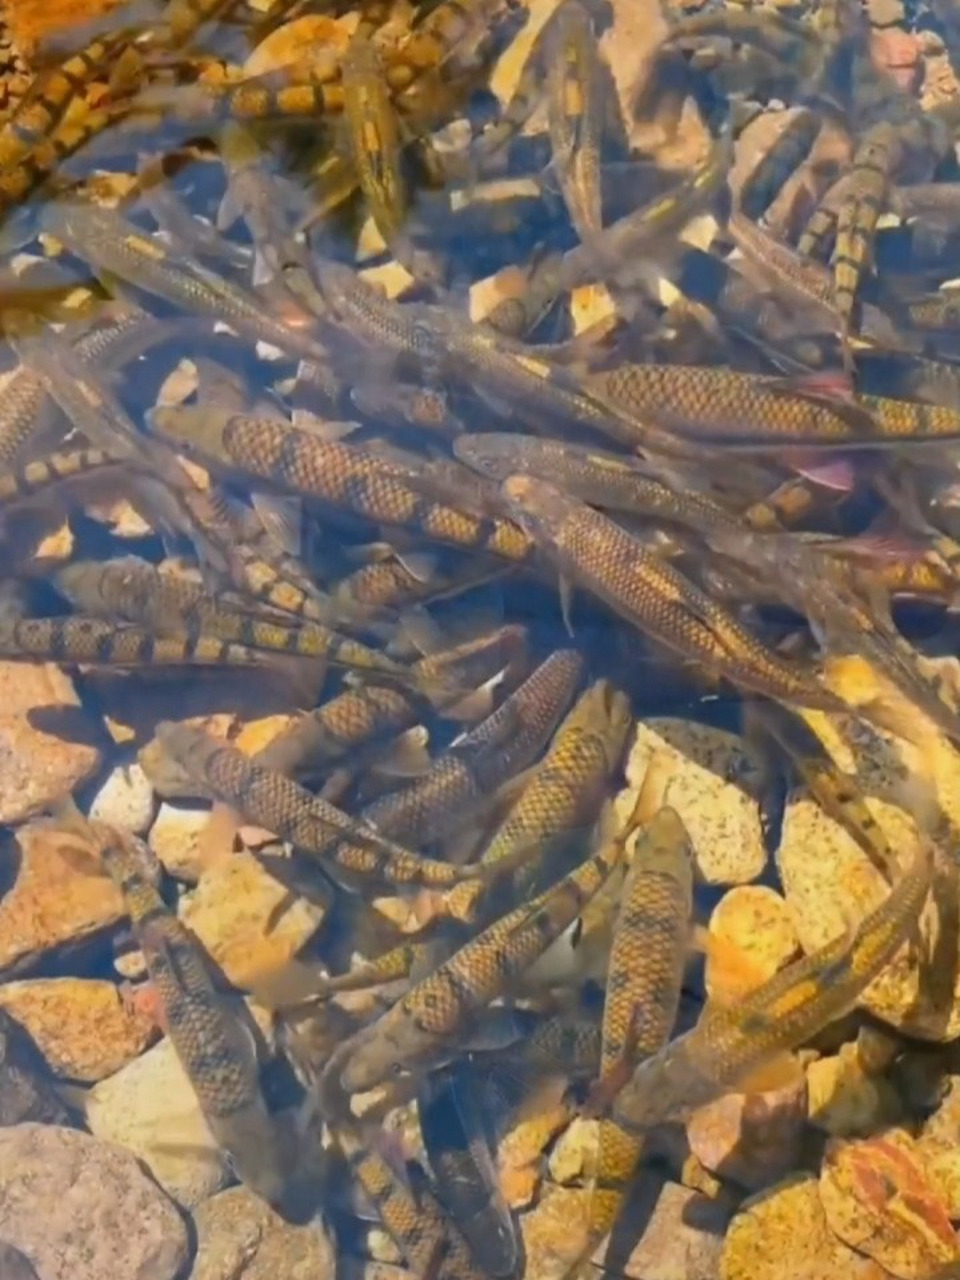 溪流野钓石斑鱼 只是喜欢一个人去钓鱼,顺便分享一下视频